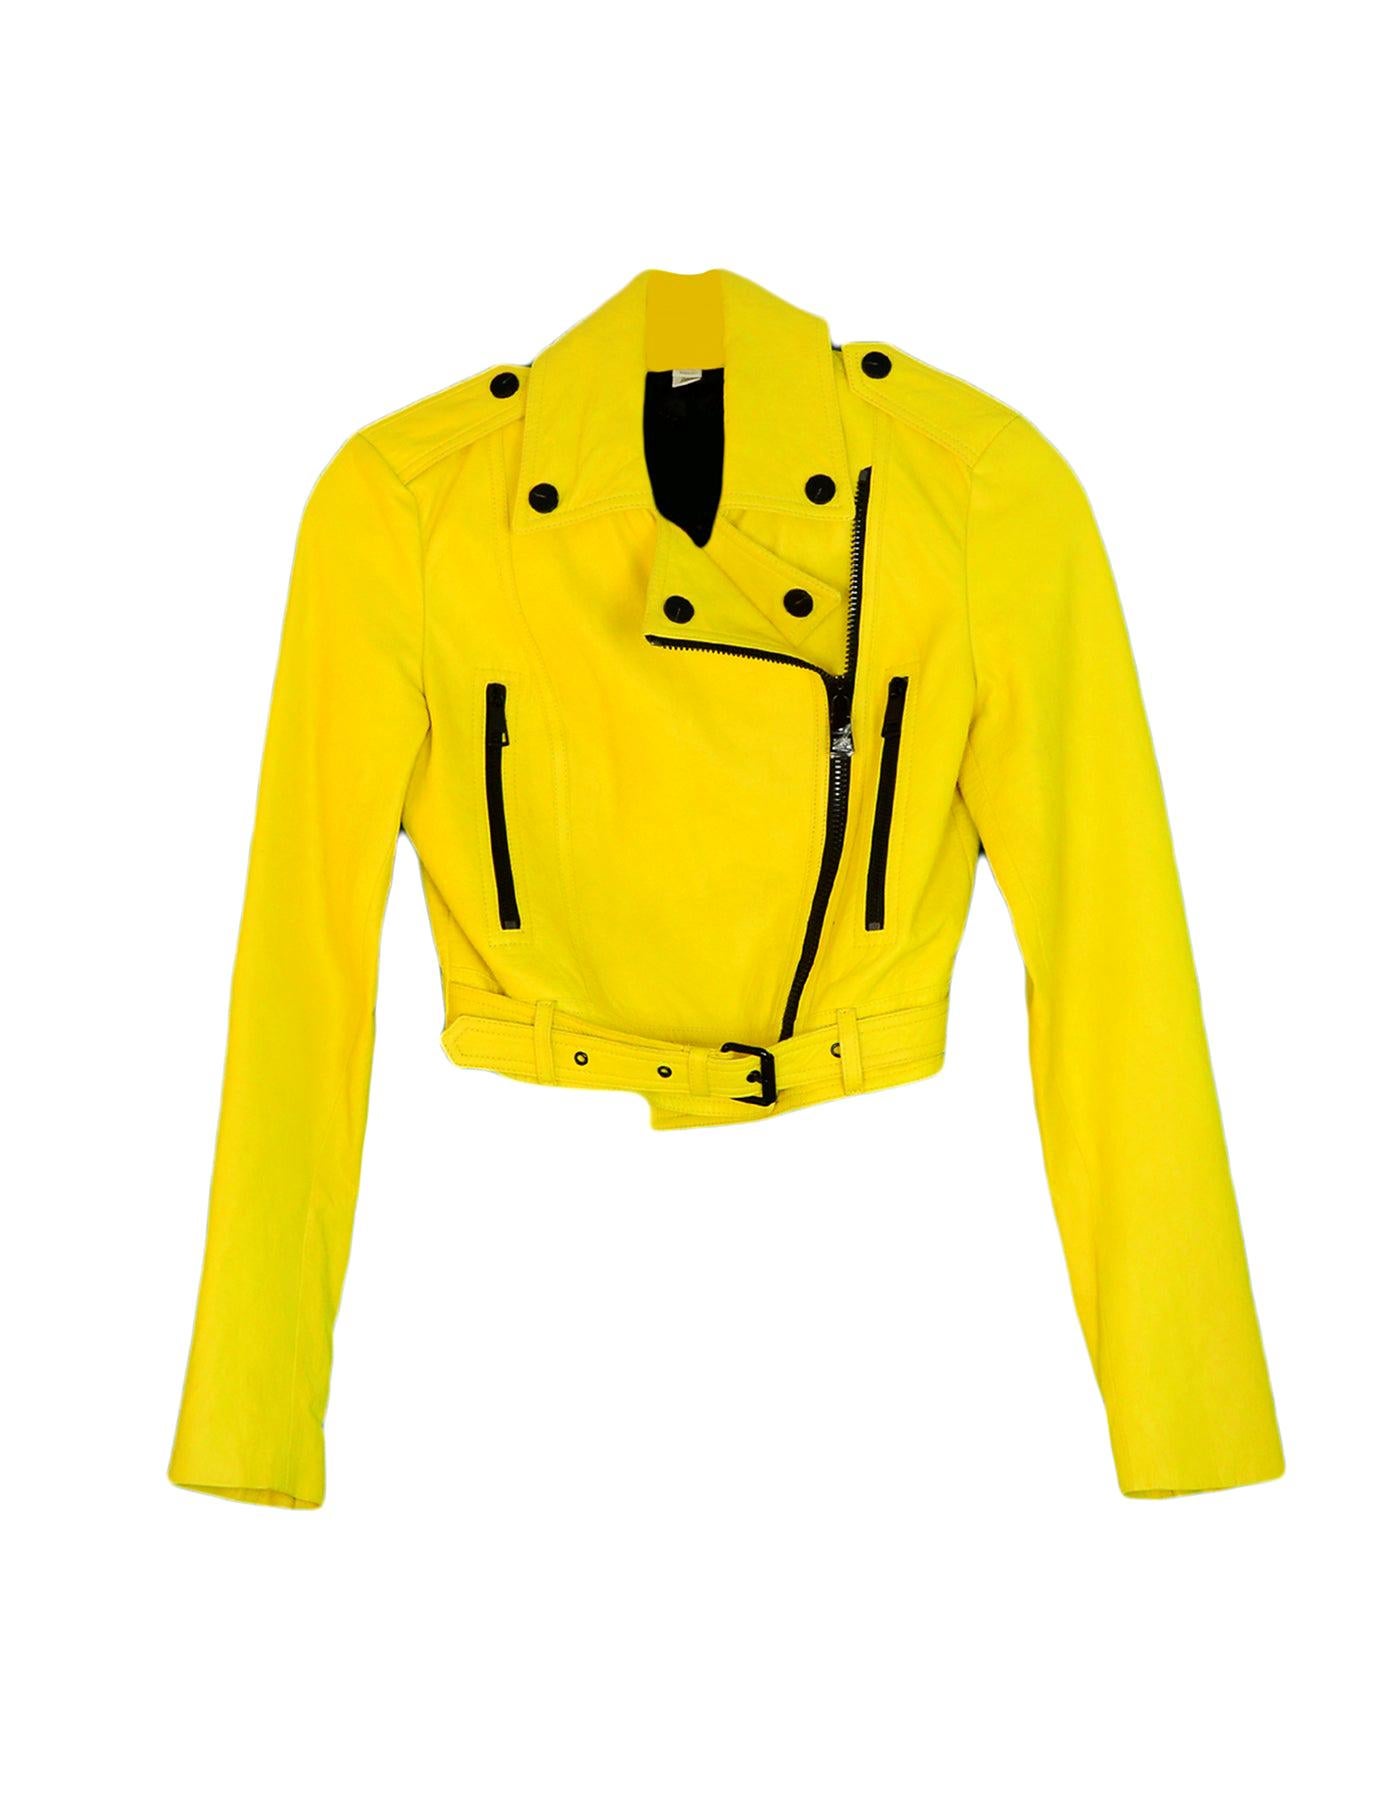 yellow burberry jacket